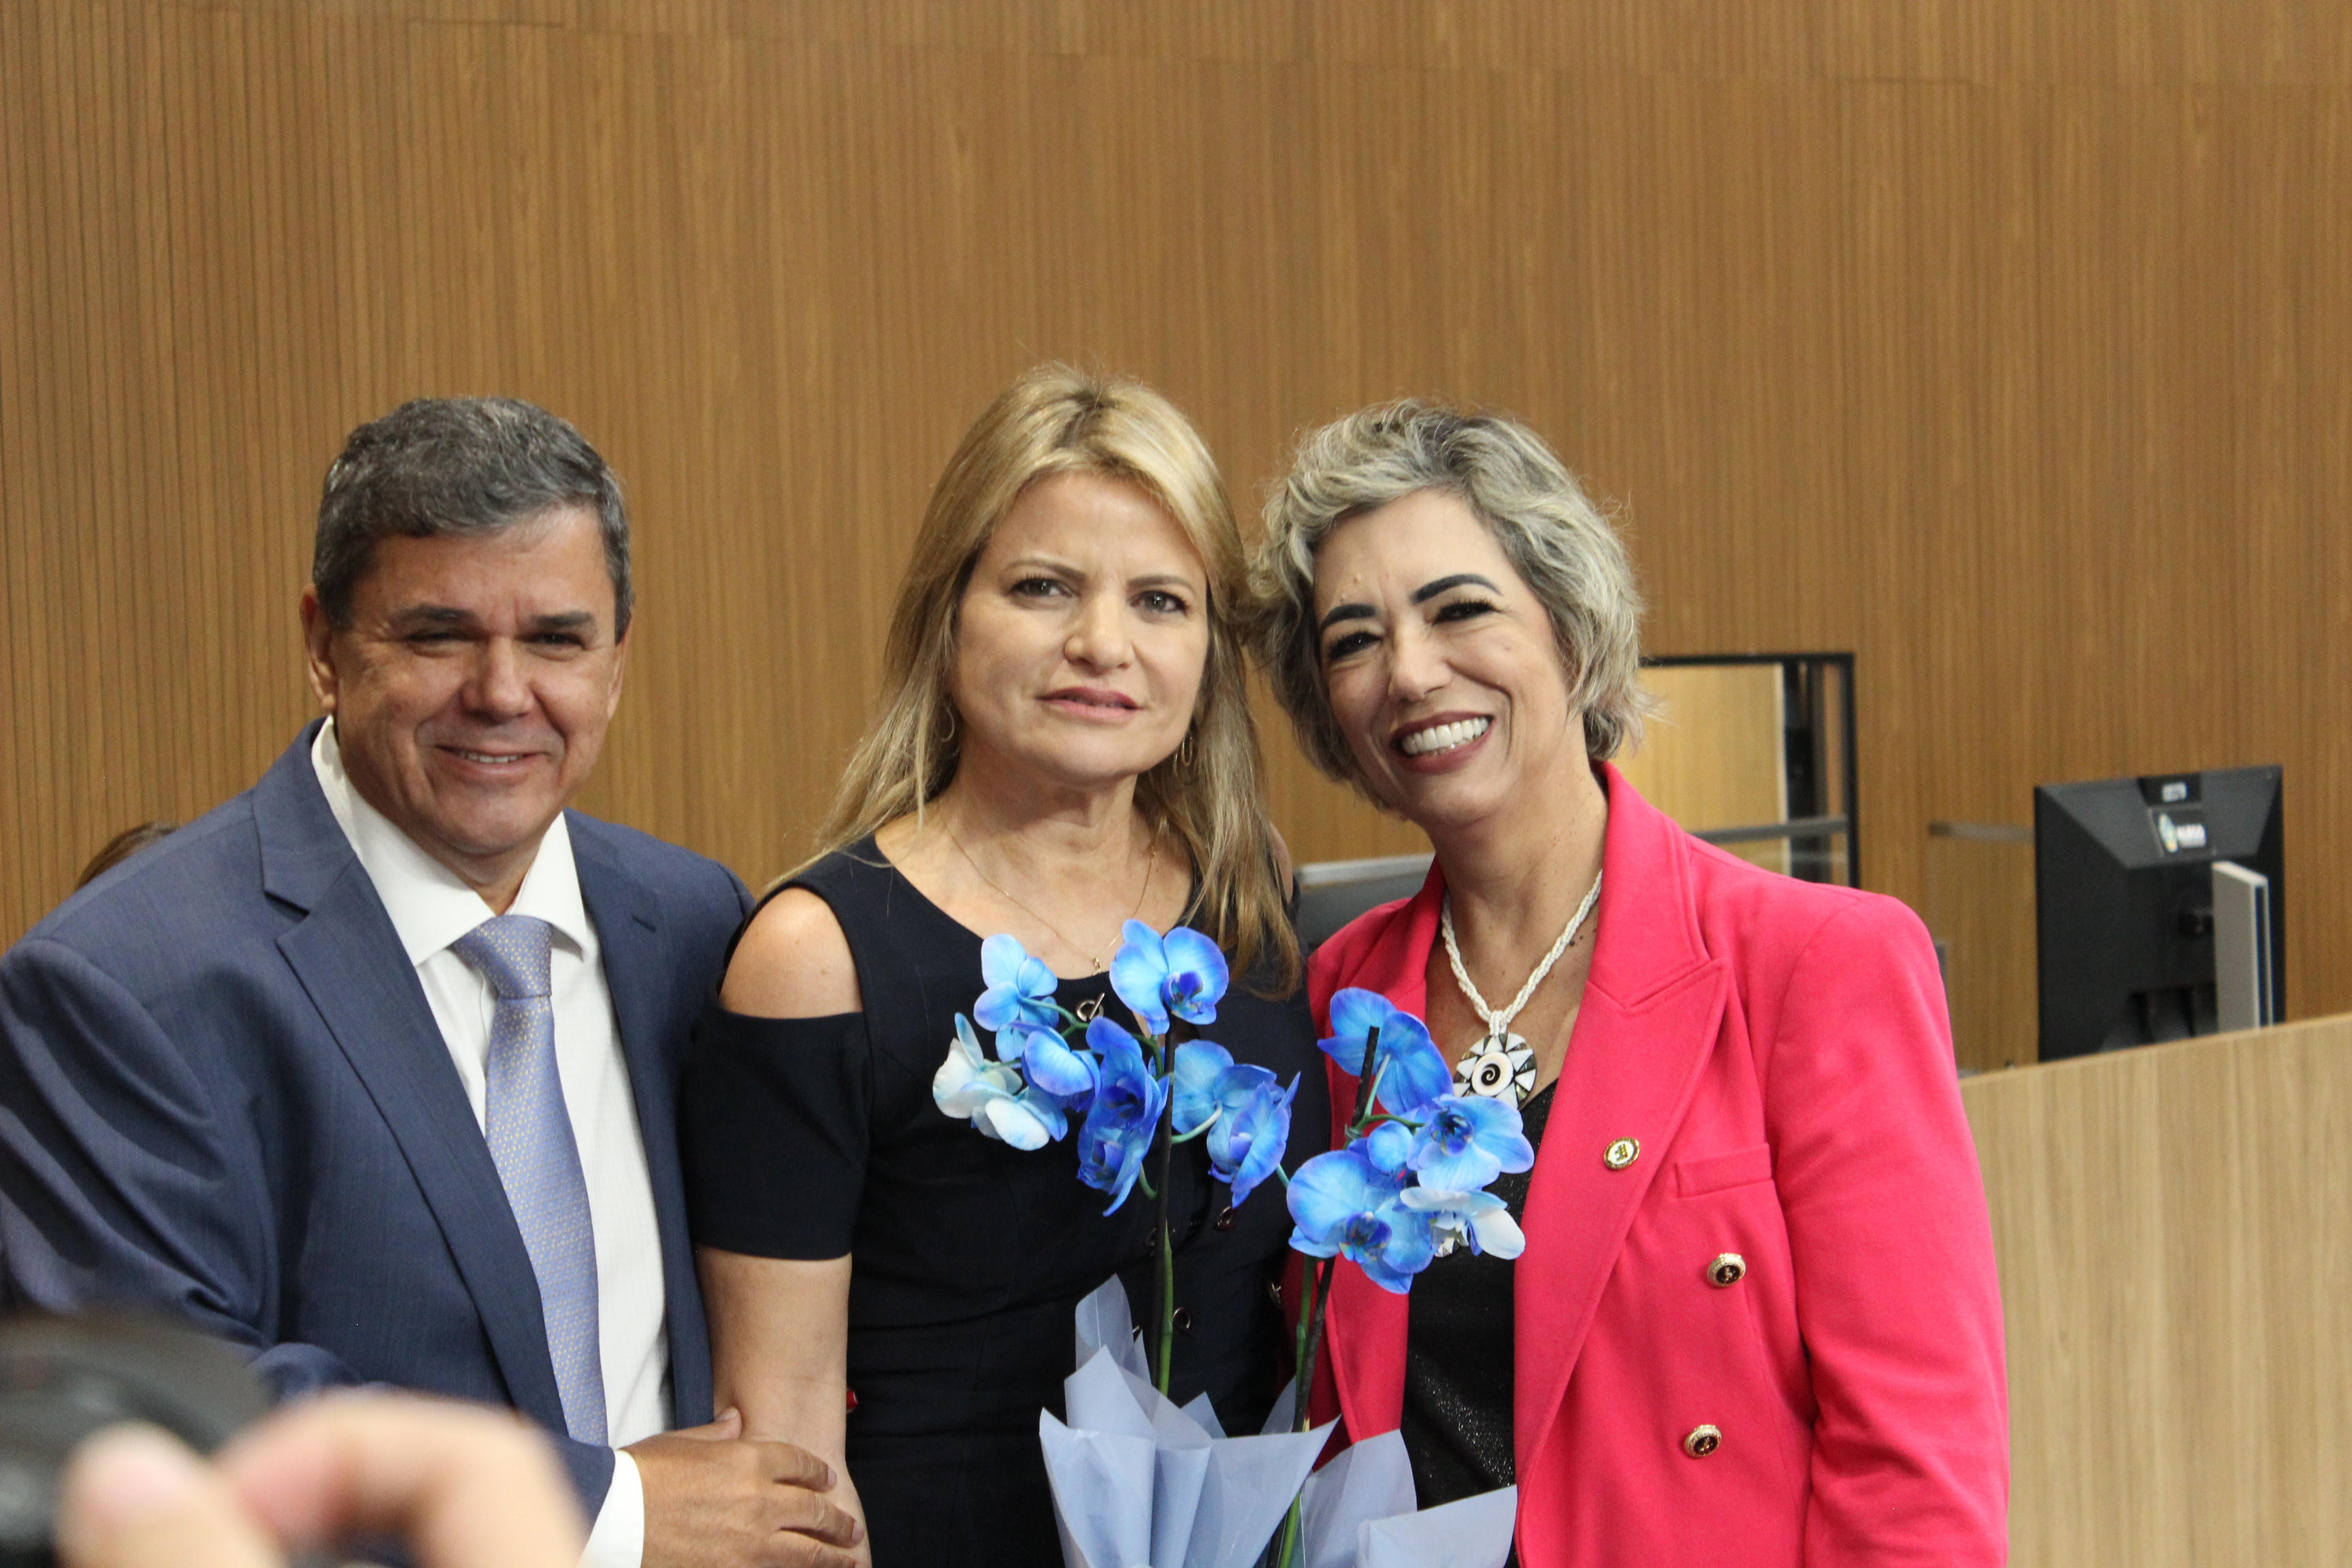 A  reitora do IFG, professora Oneida, com o deputado estadual George Moraes e a deputada federal Flávia Moraes